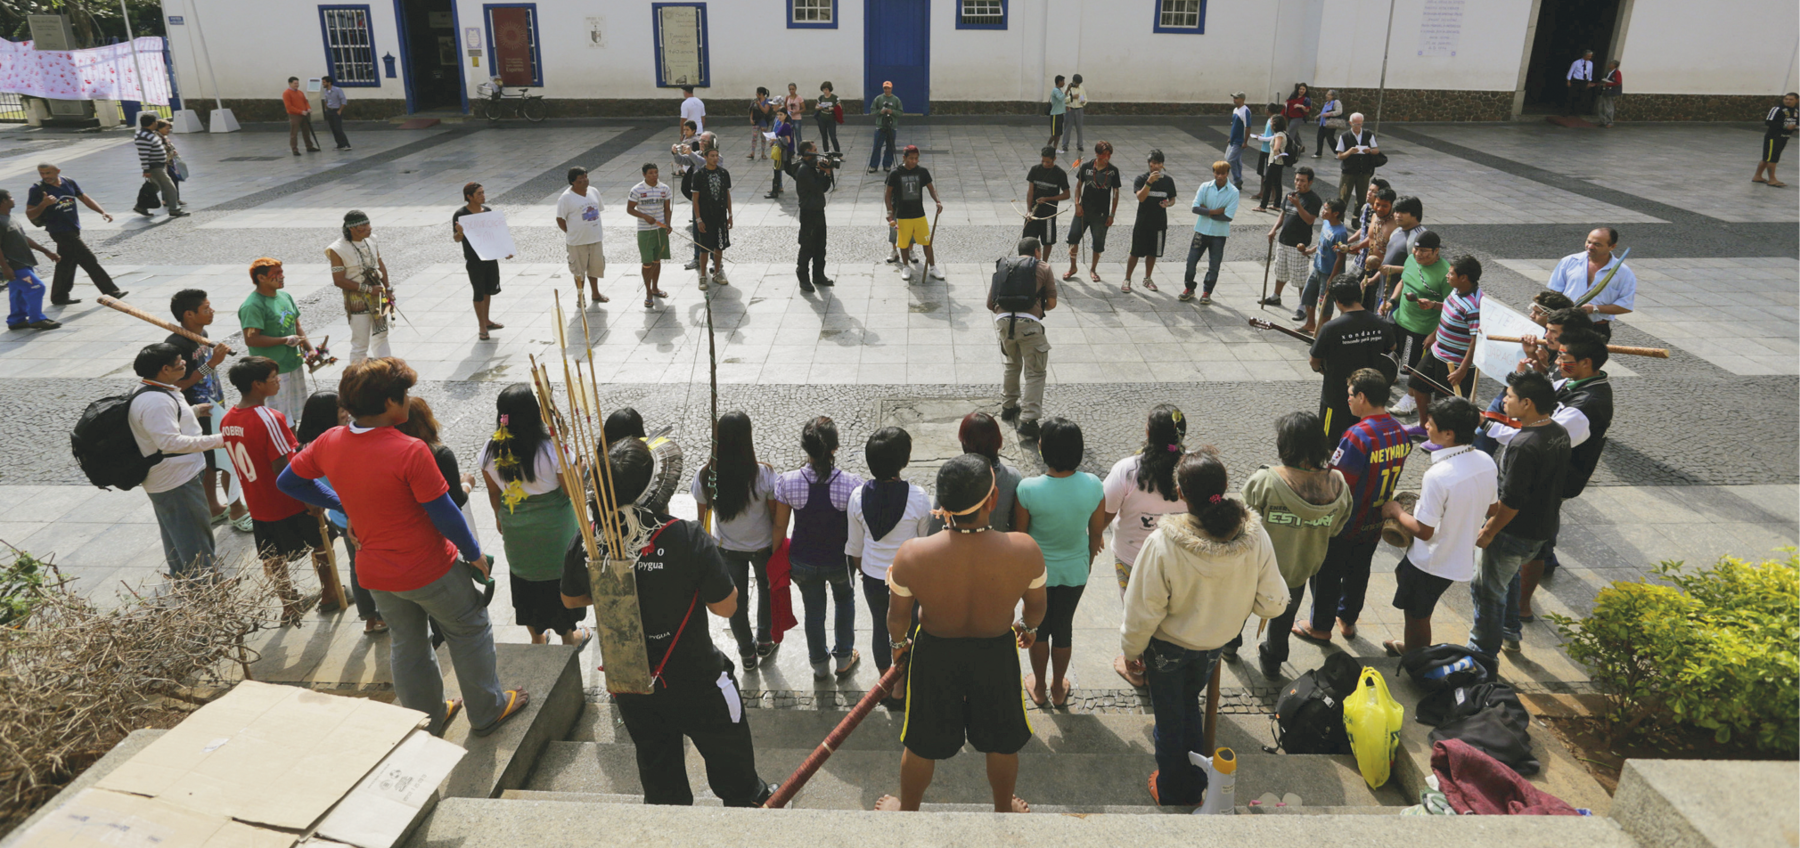 Fotografia. Em um pátio, pessoas indígenas estão reunidas, dispostas em círculo. Algumas portam pedaços de pau na mão, outras, cartazes. Um homem indígena segura um arco e um feixe de flechas. Pessoas ao redor observam o ato.